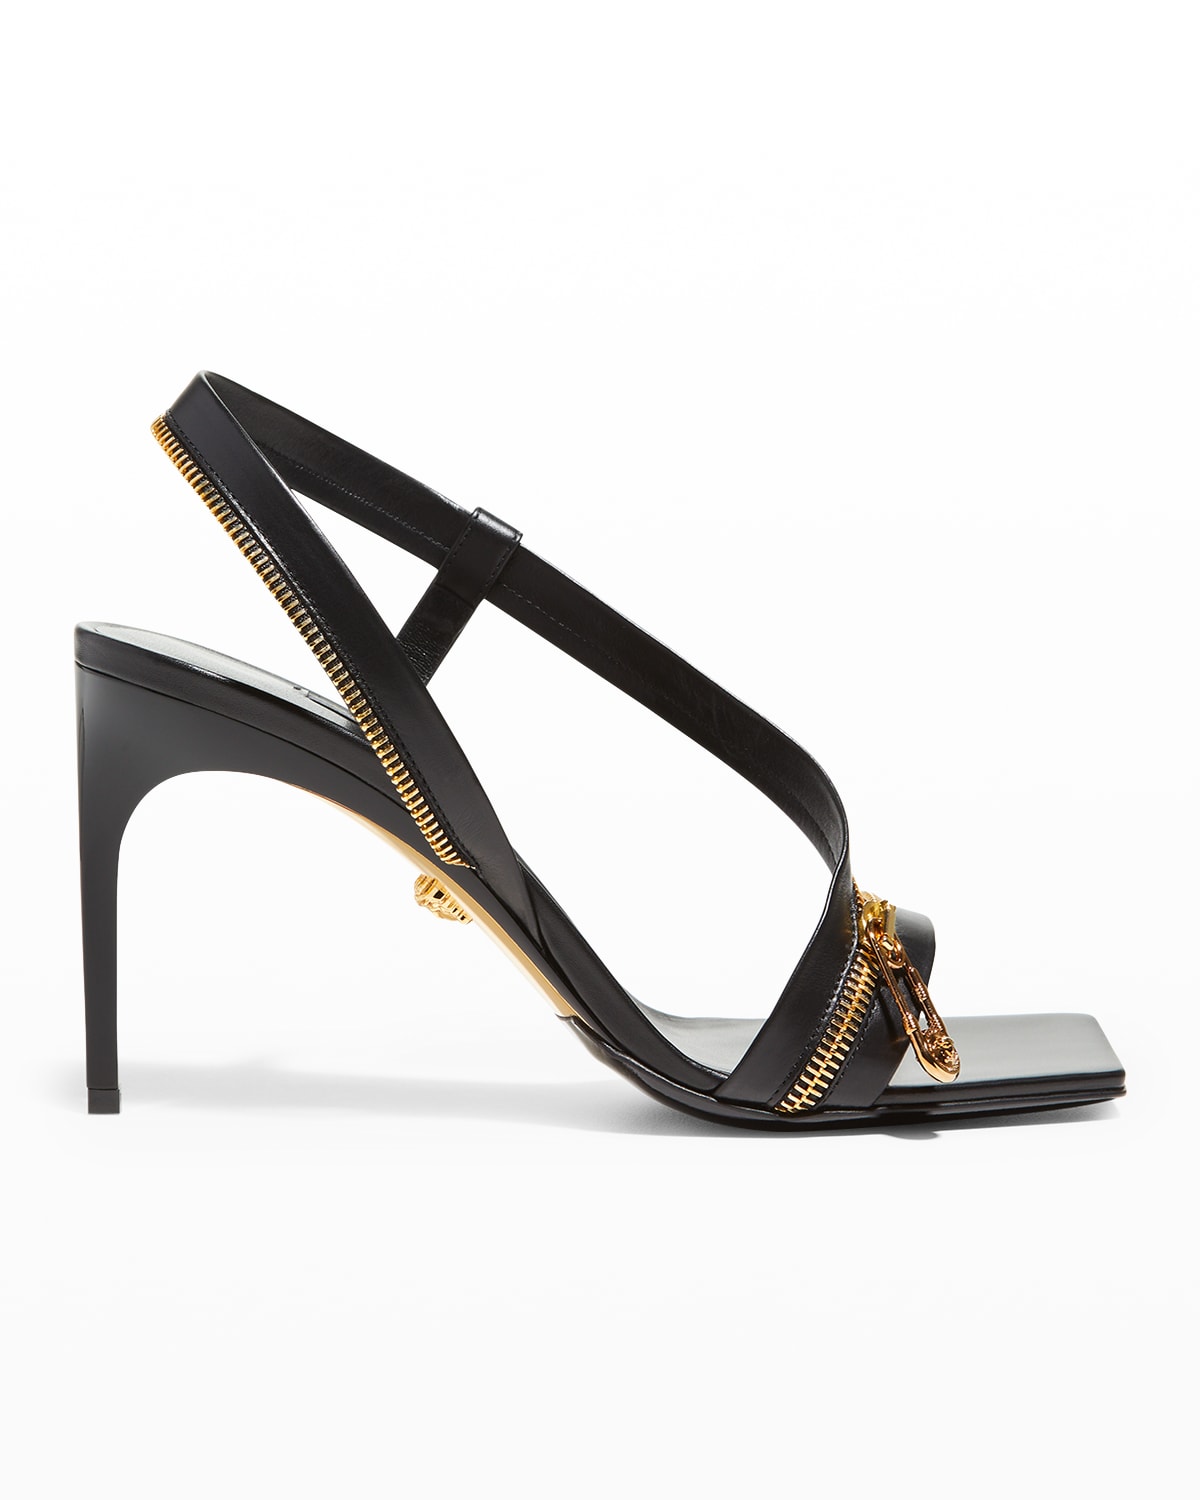 Versace Golden Zipper Stiletto Sandals